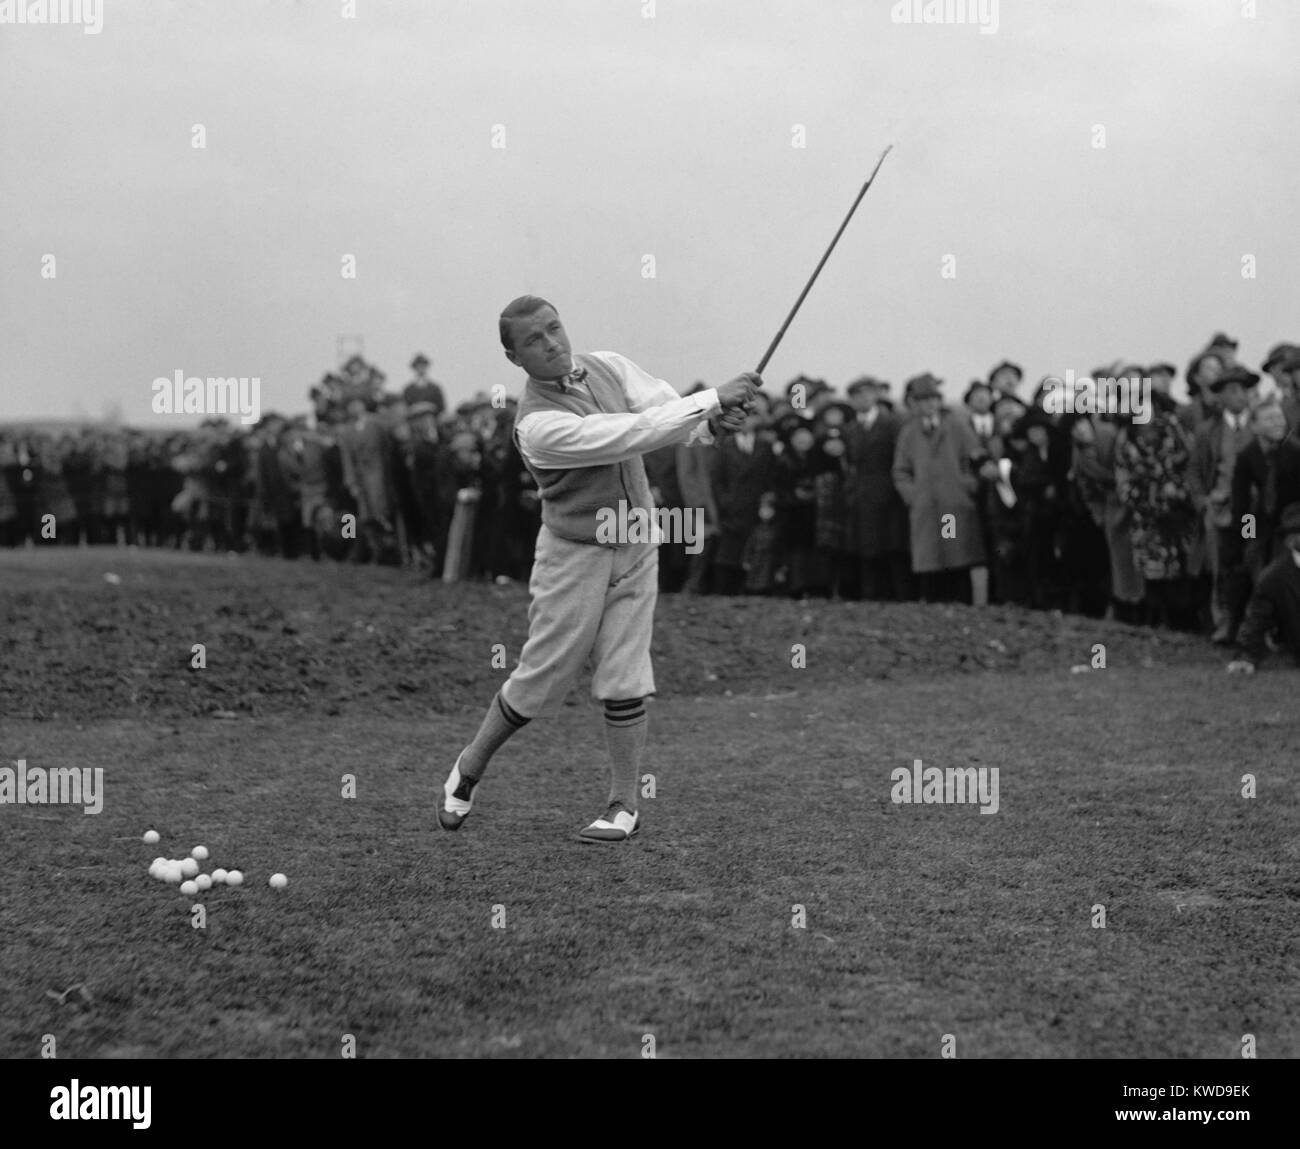 Amerikanischer professioneller Golfspieler Gene Sarazen spielen vor einer Masse von Zuschauern, Dez. 9, 1922. Im Alter von 20 Jahren, Sarazen gewann seinen ersten großen Meisterschaften 1922: USA und PGA Meisterschaft. (BSLOC 2015 17 118) Stockfoto